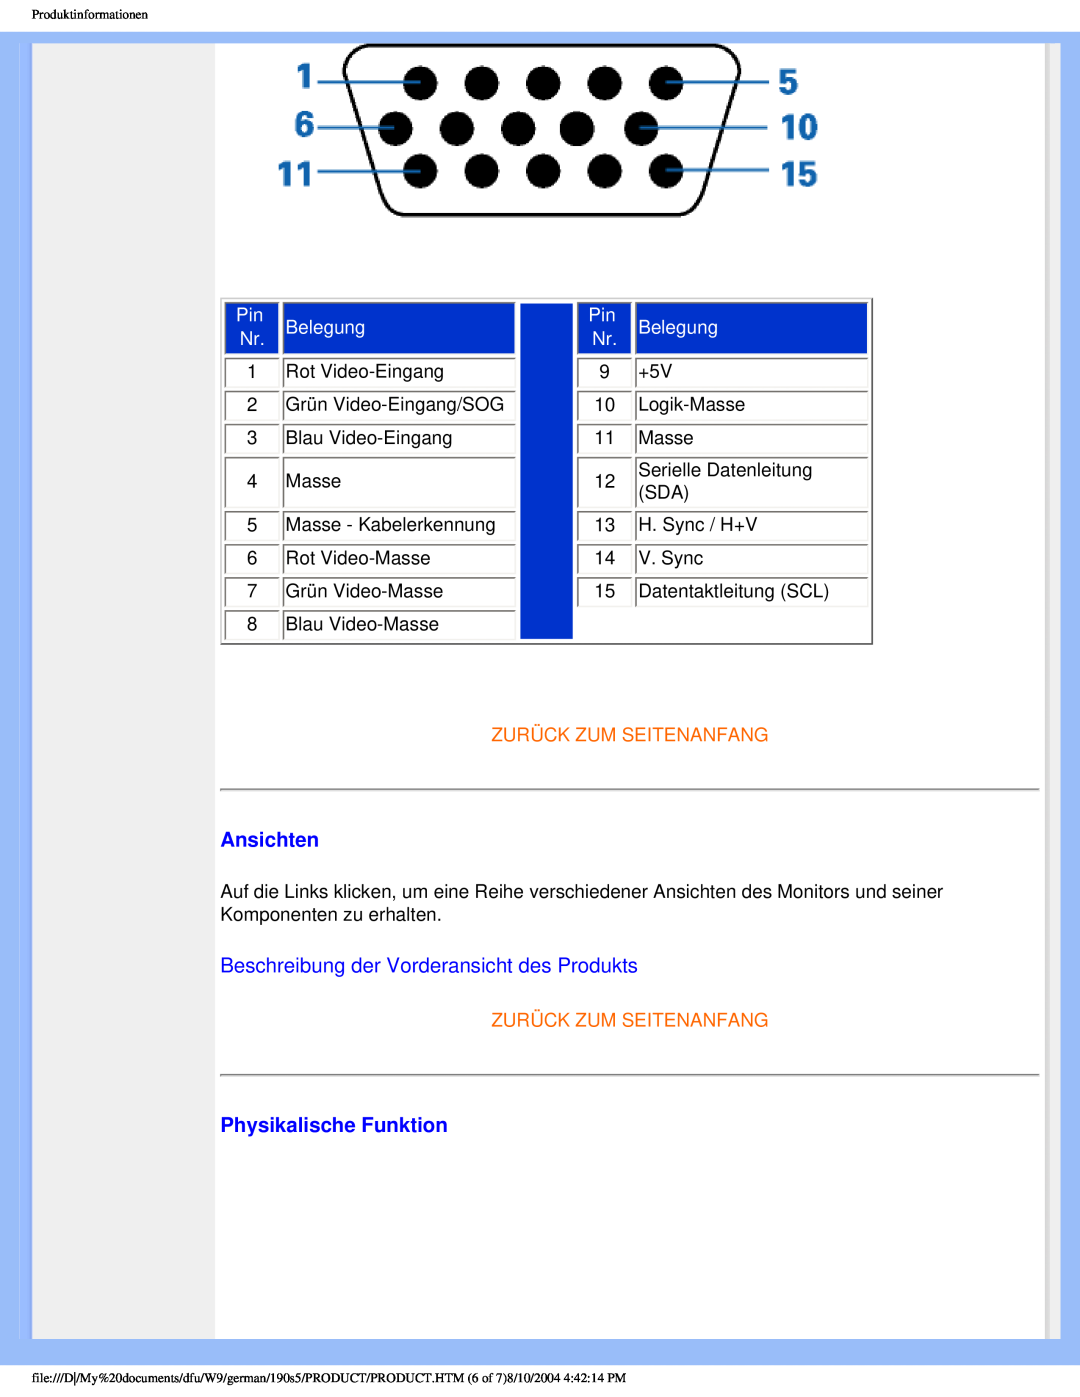 Philips 190S5 user manual Ansichten, Beschreibung der Vorderansicht des Produkts, Physikalische Funktion, Belegung 